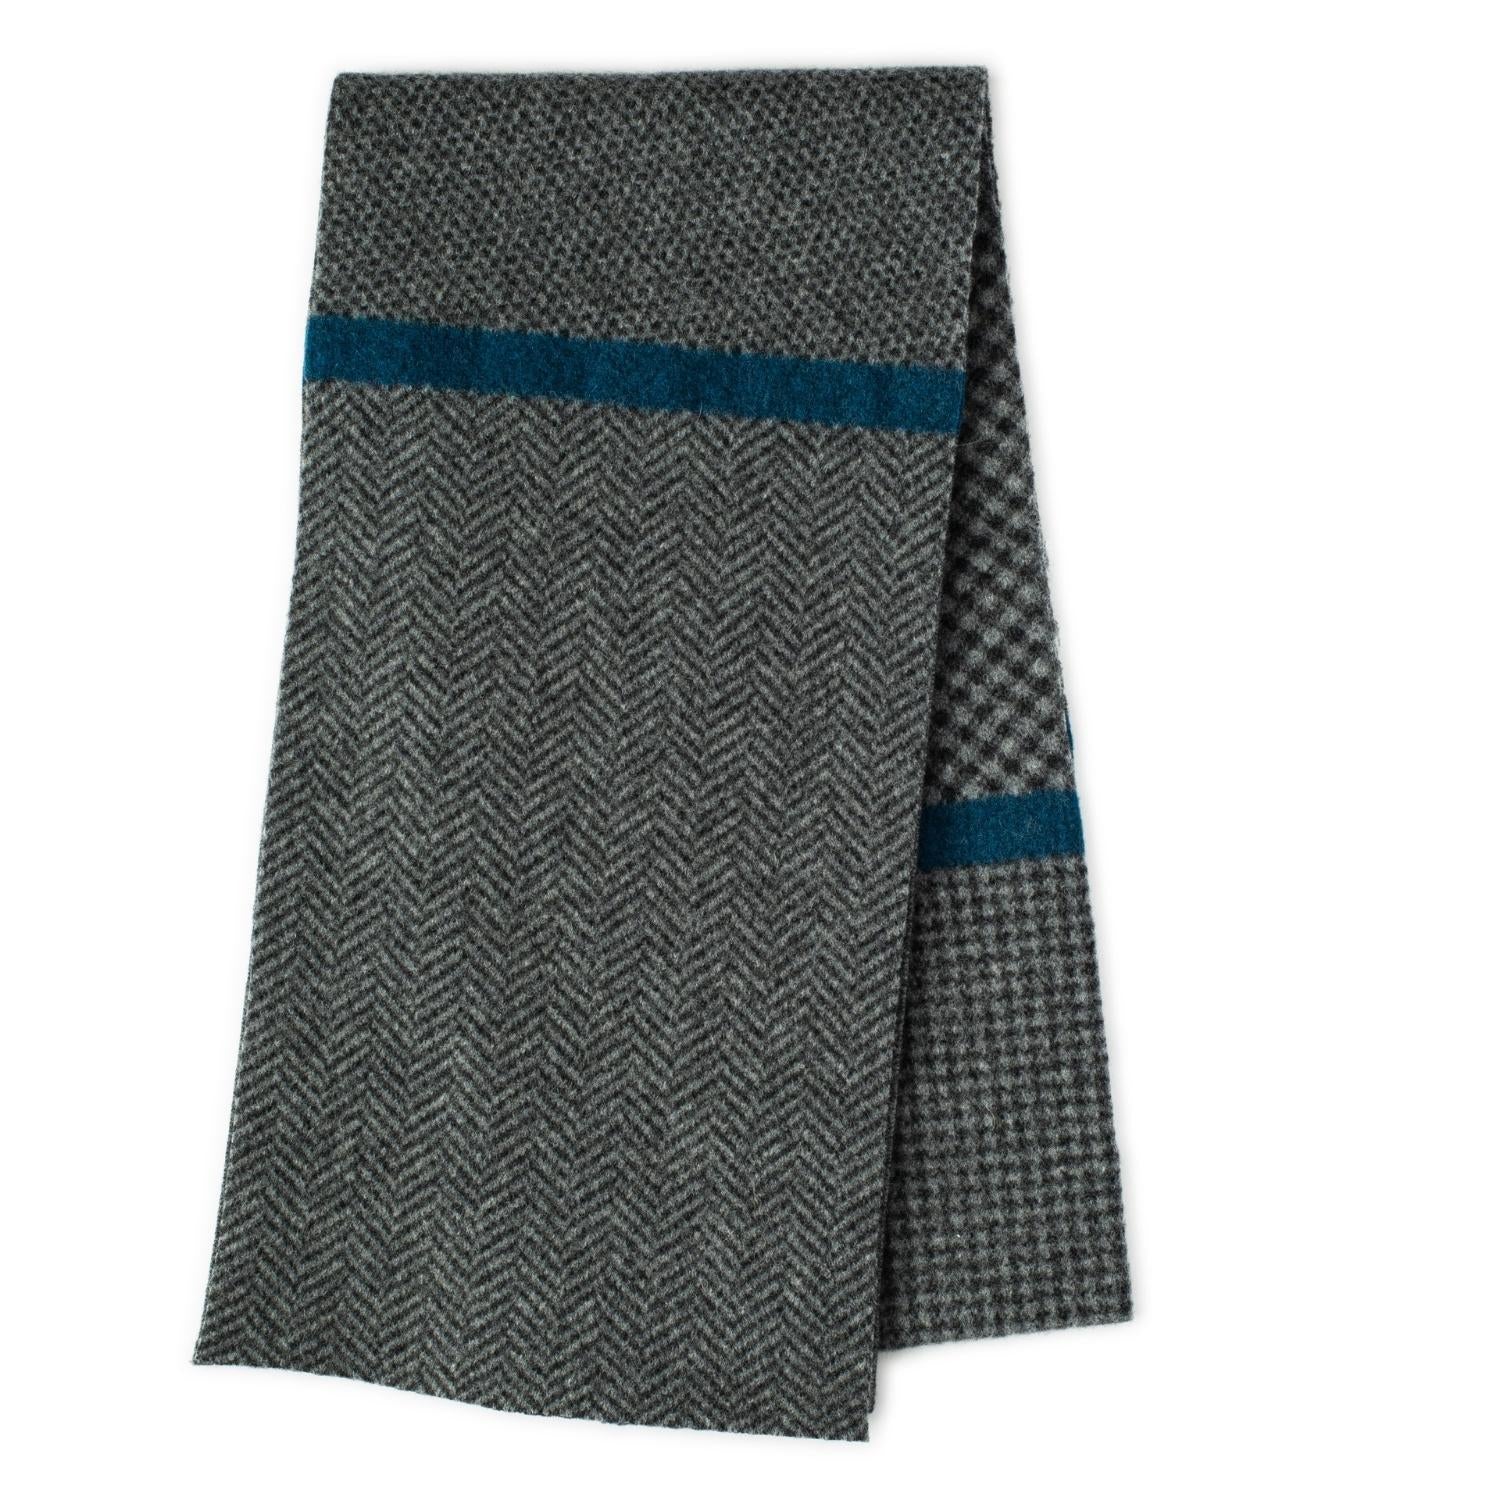 Patterned scarf - herringbone scarf - grey